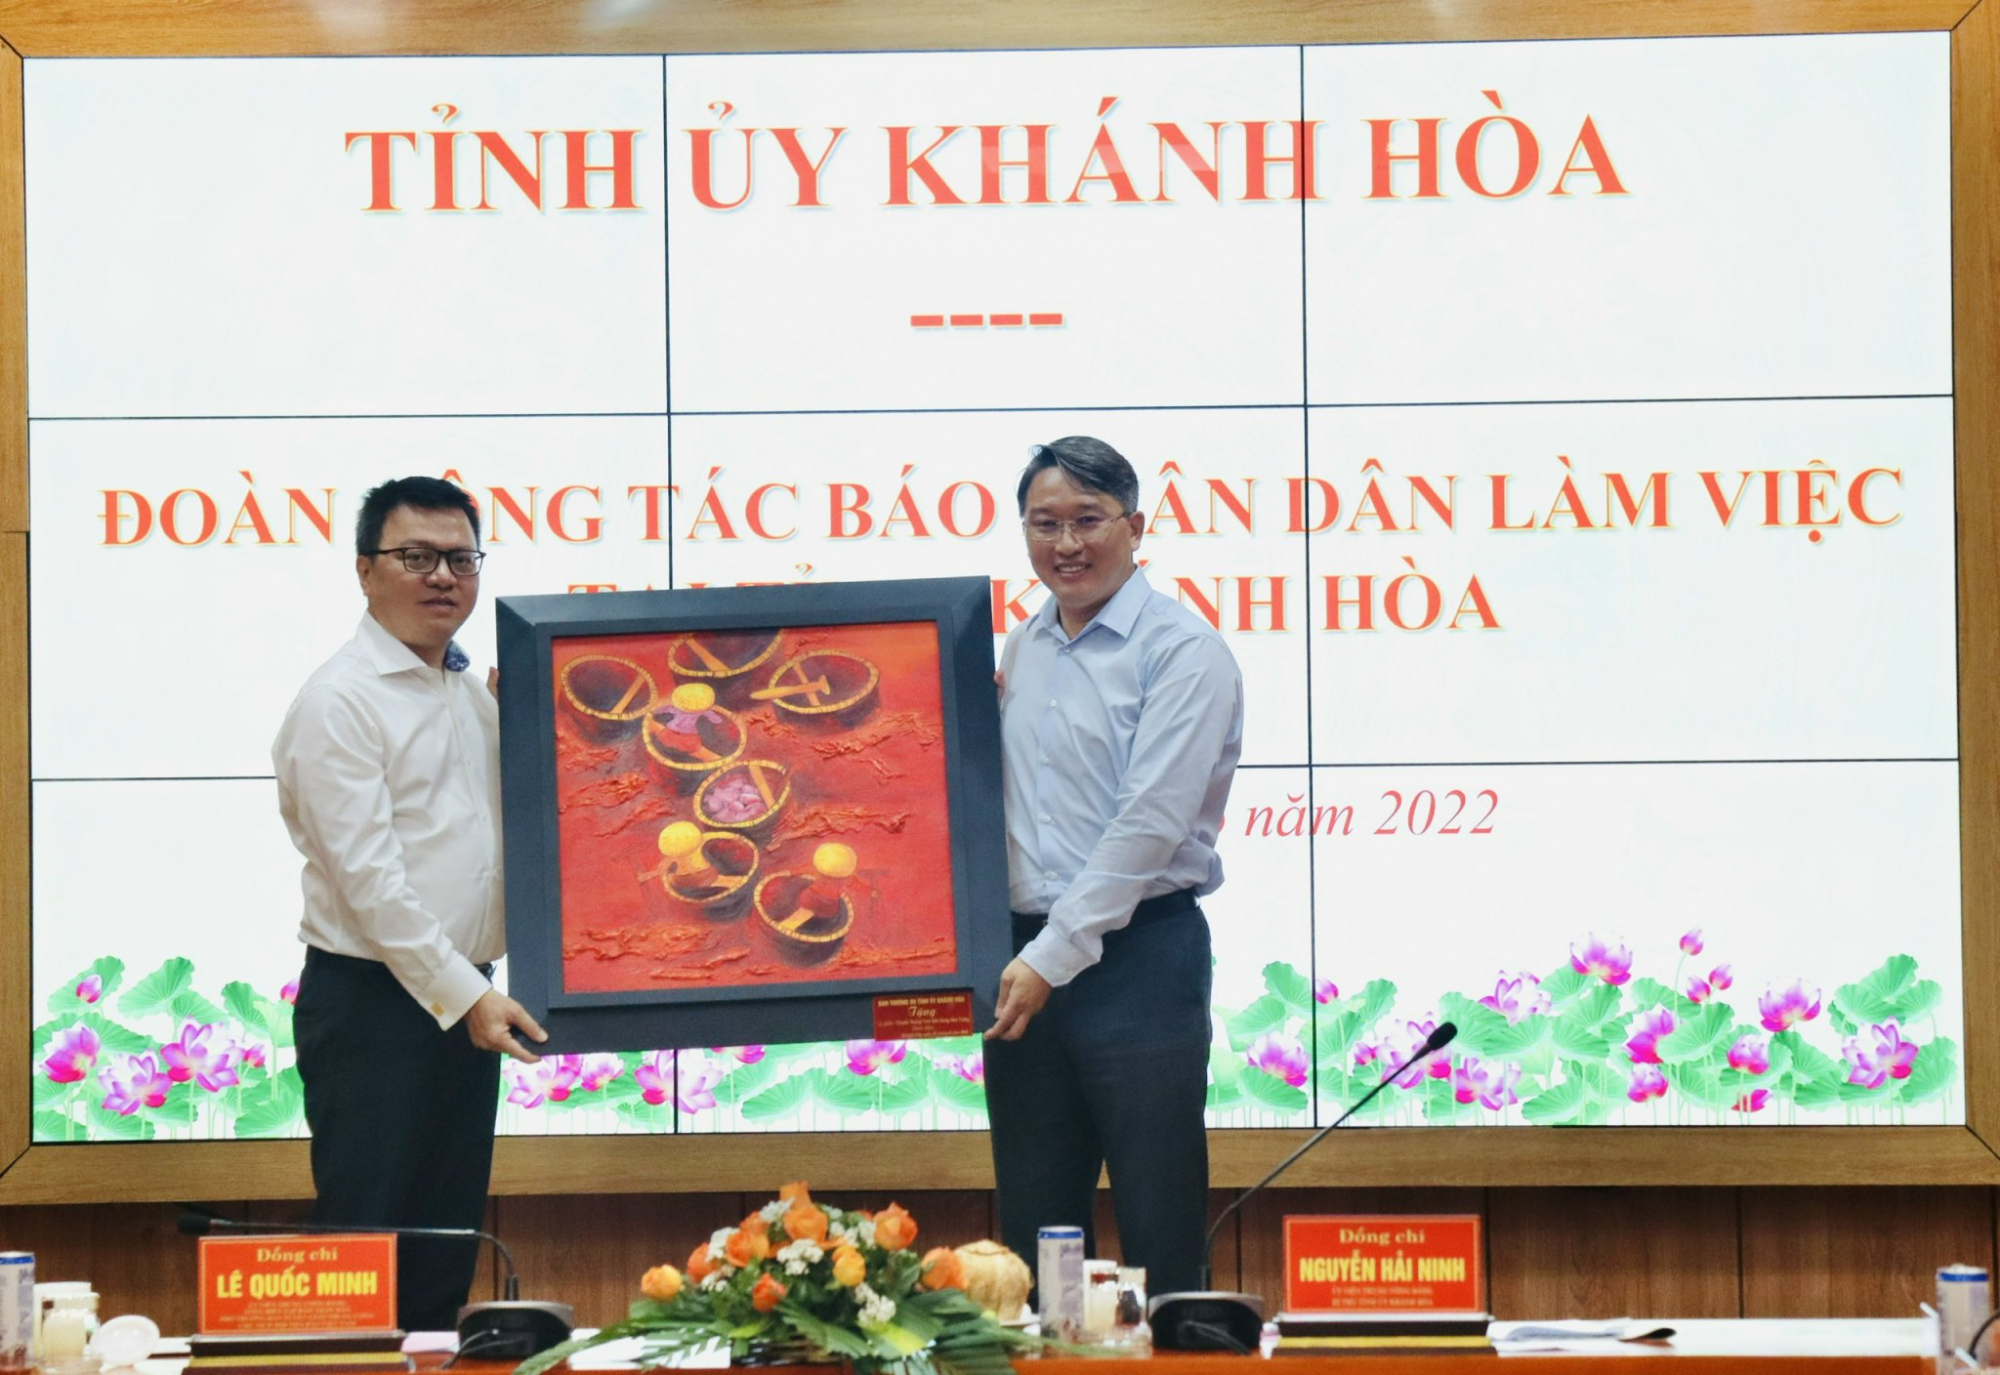 Bí thư Tỉnh ủy Khánh Hòa Nguyễn Hải Ninh (bên phải) tặng quà cho Đoàn công tác Báo Nhân Dân. Ảnh: Xuân Thành